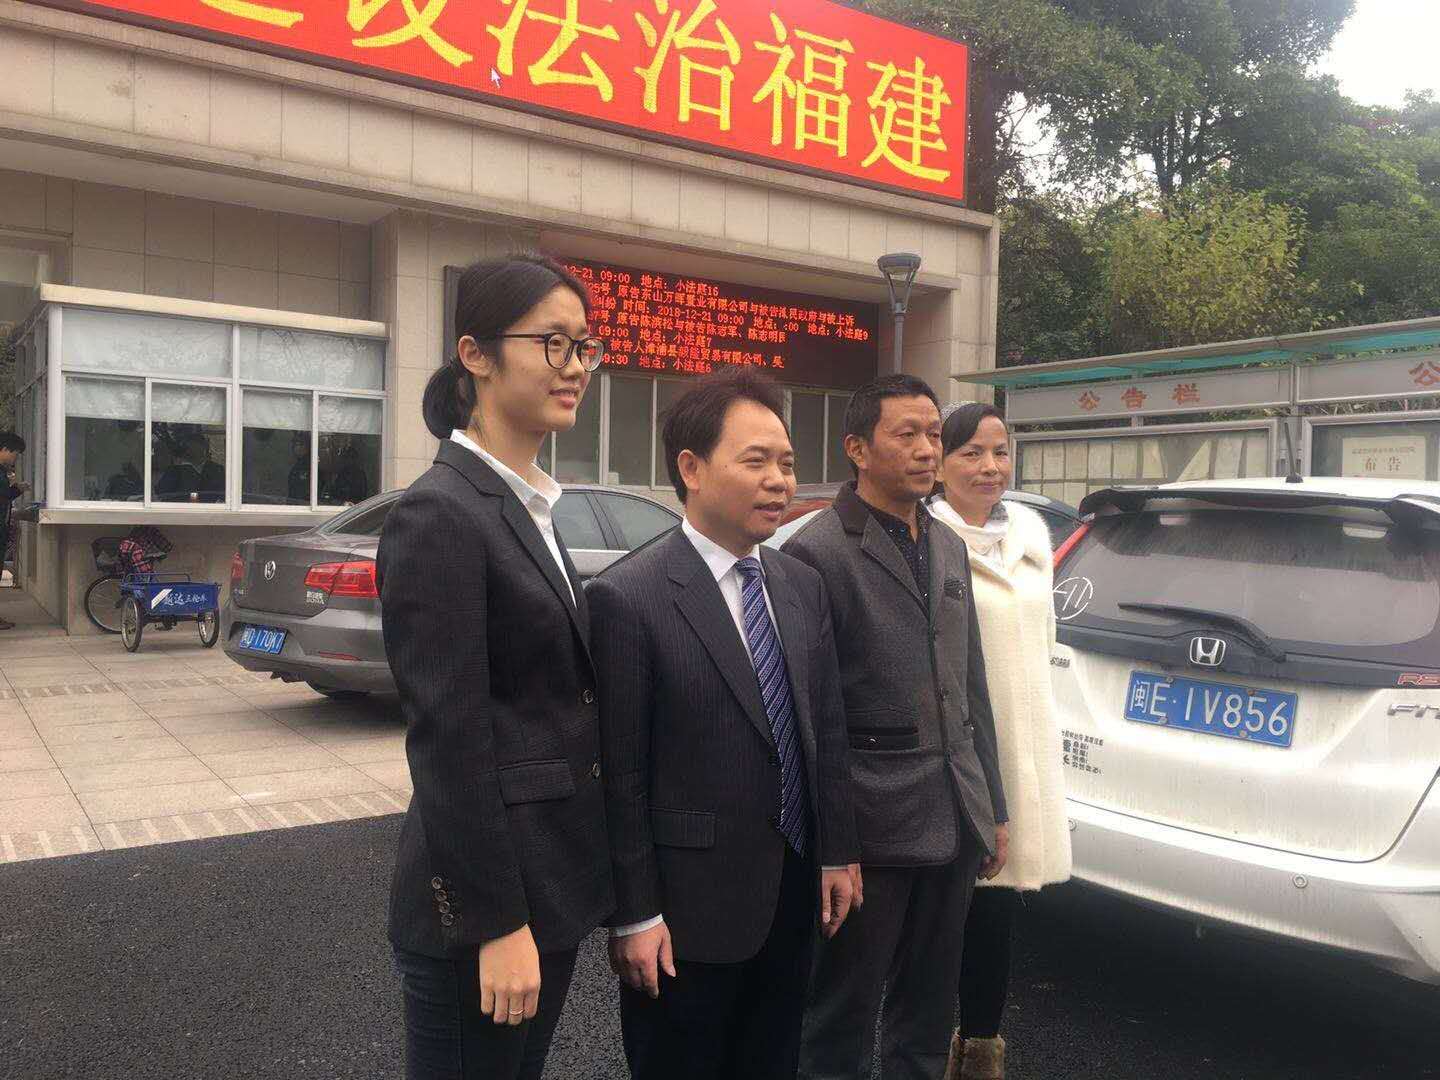 刘大蔚网购仿真枪案改判七年三个月 法院详解判决依据